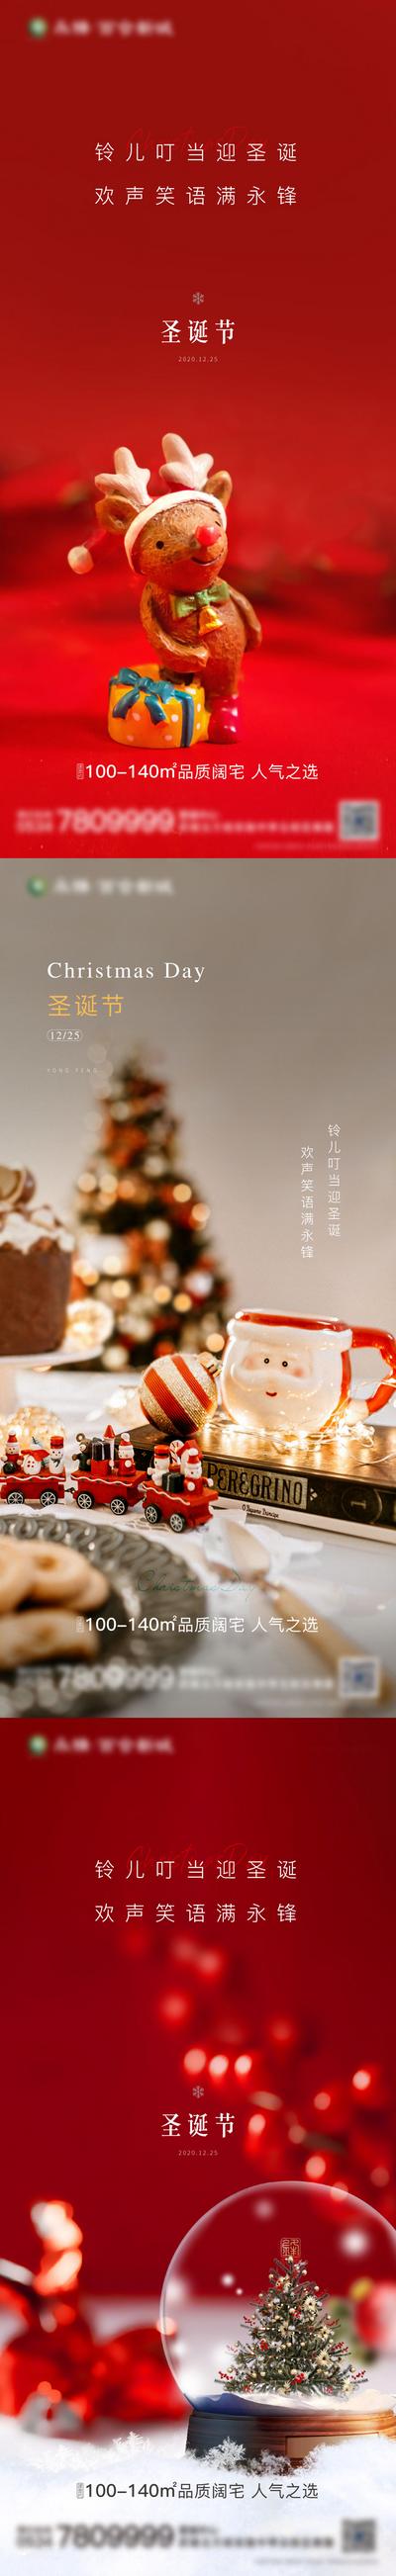 南门网 海报 房地产 公历节日 圣诞节 圣诞树 水晶球 系列